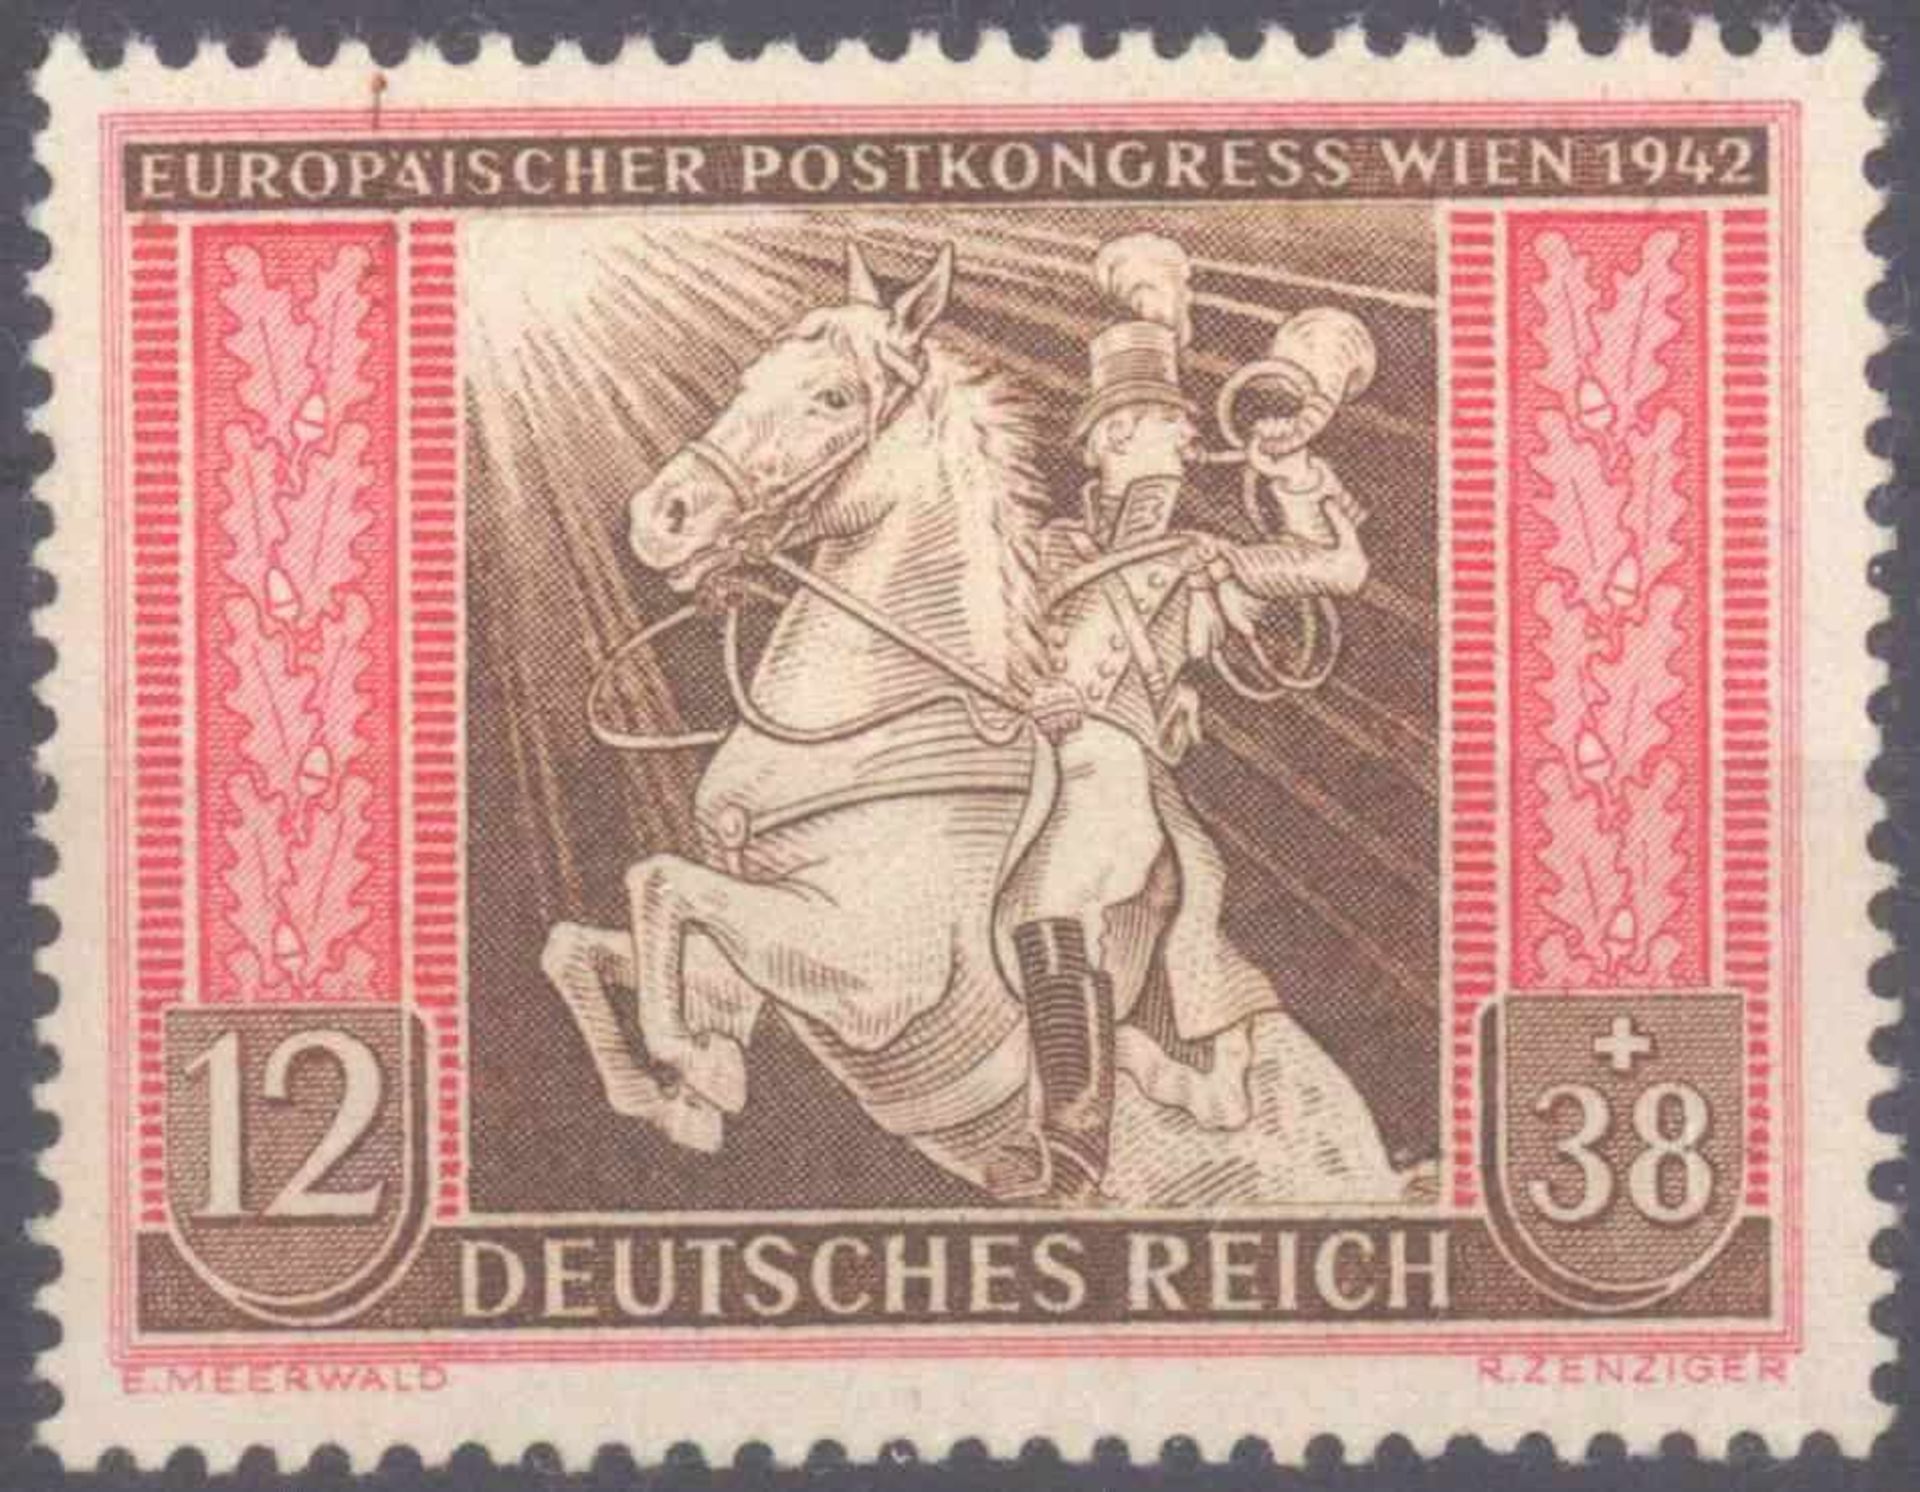 1942 III. REICH; 12+38 Pfennig Postkongress, KW 110 Euromit Plattenfehler I "brauner Strich und